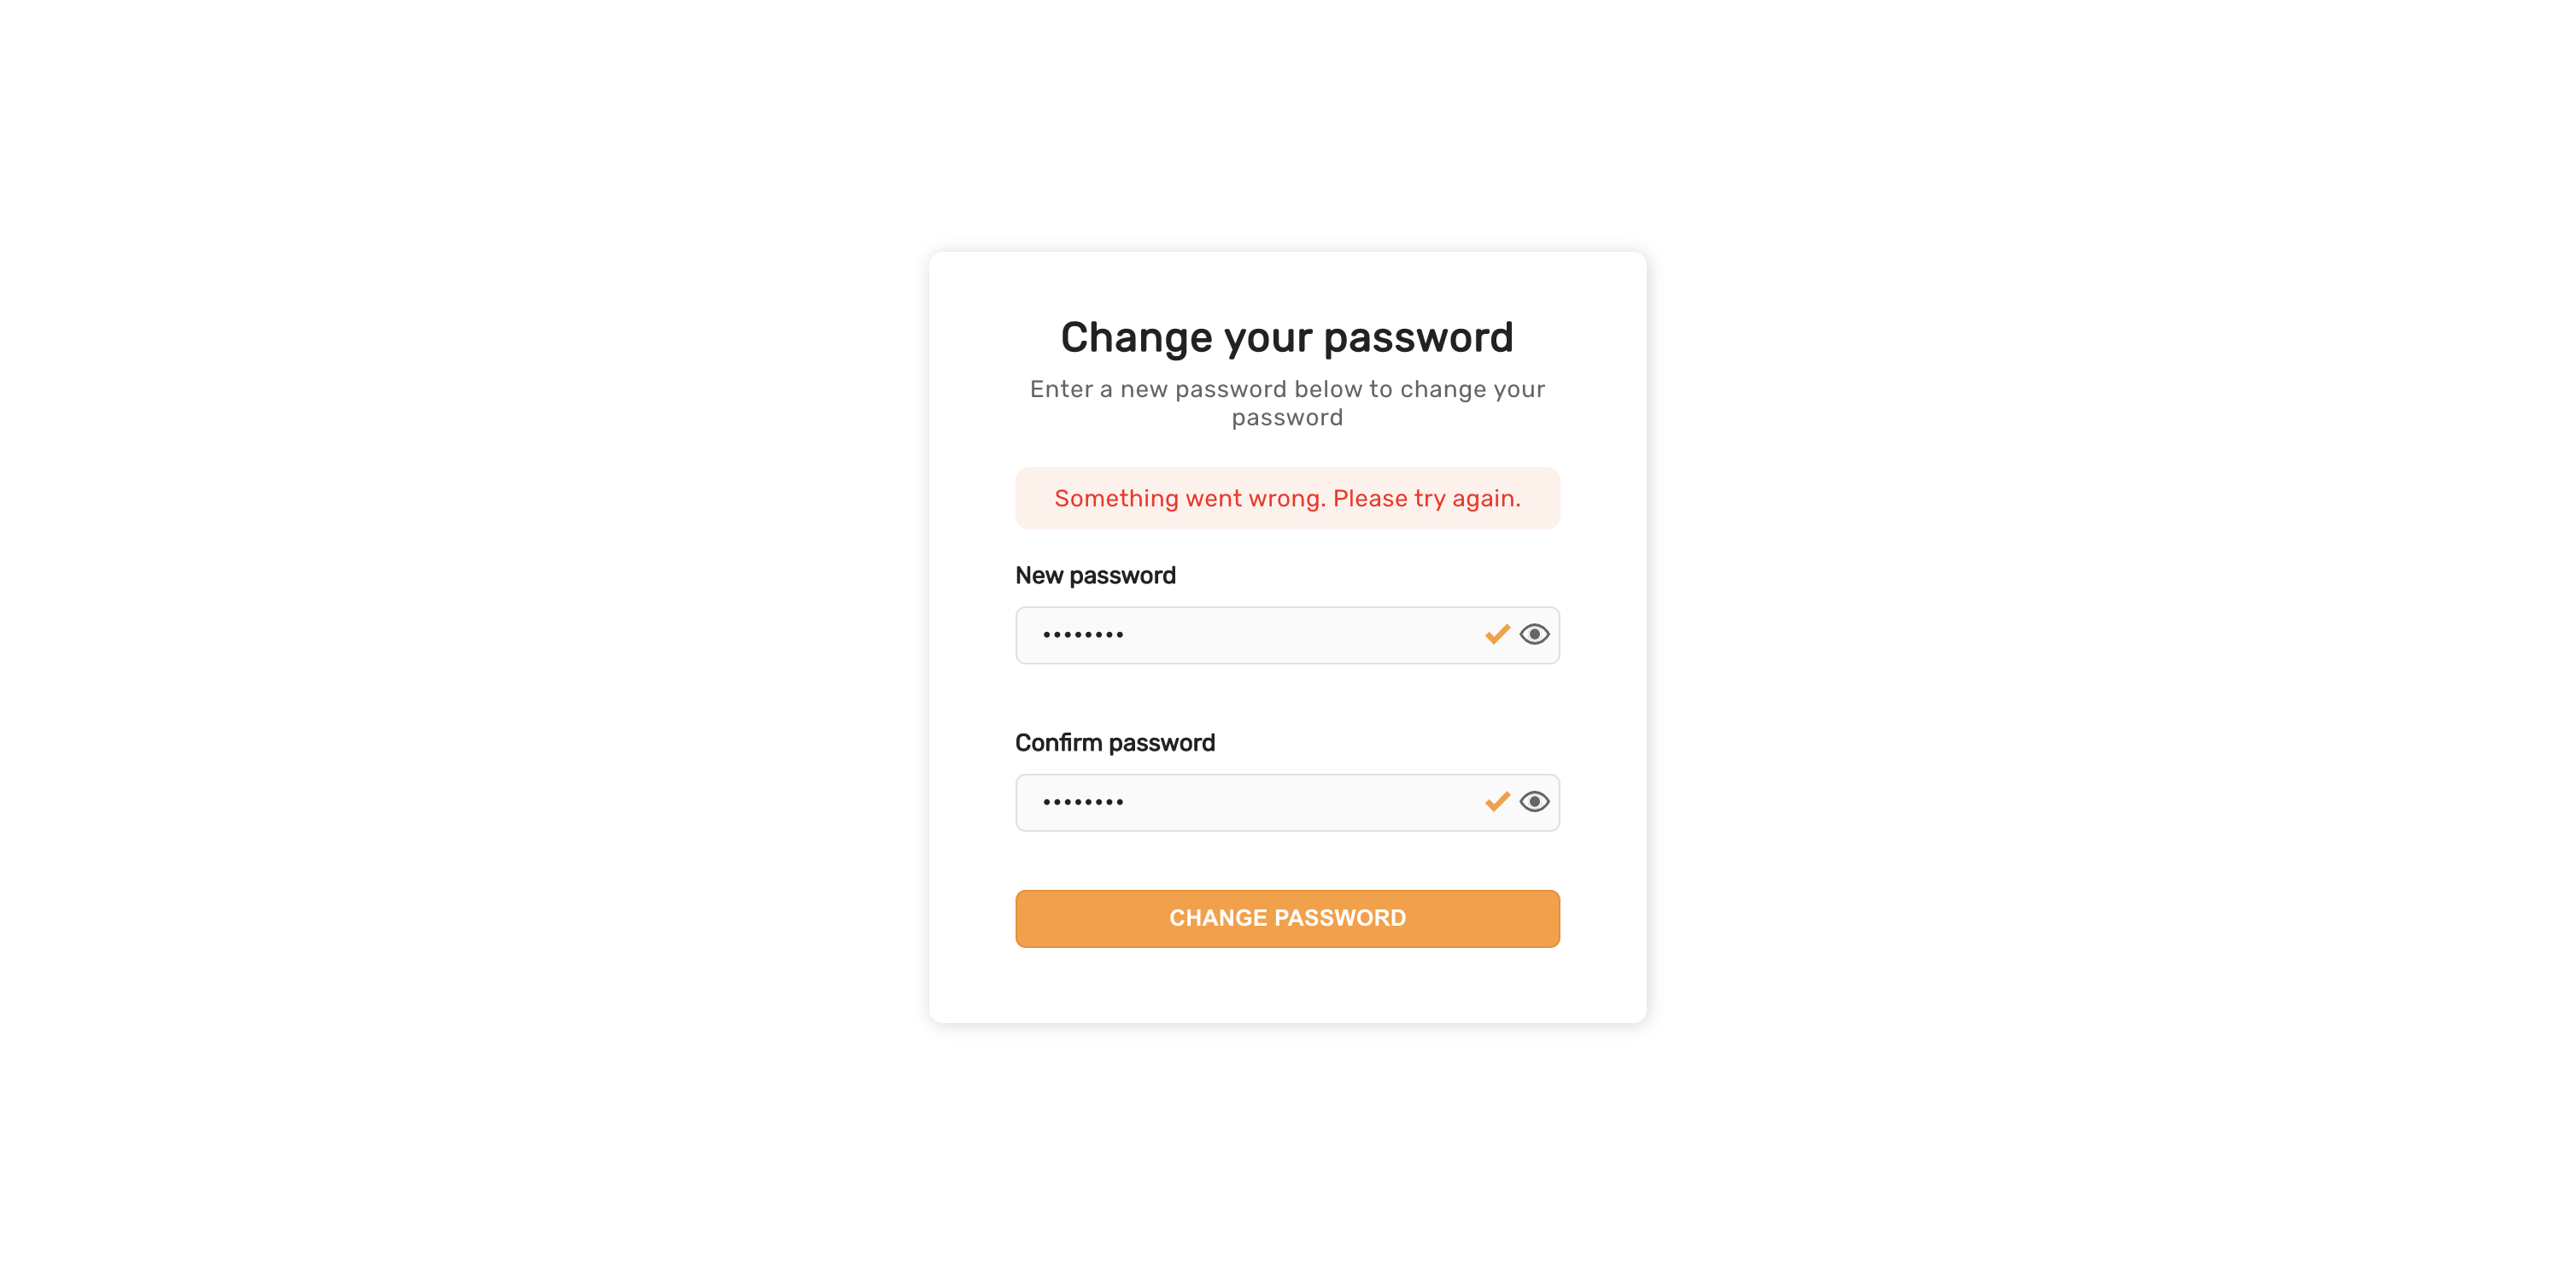 Enter new password general error